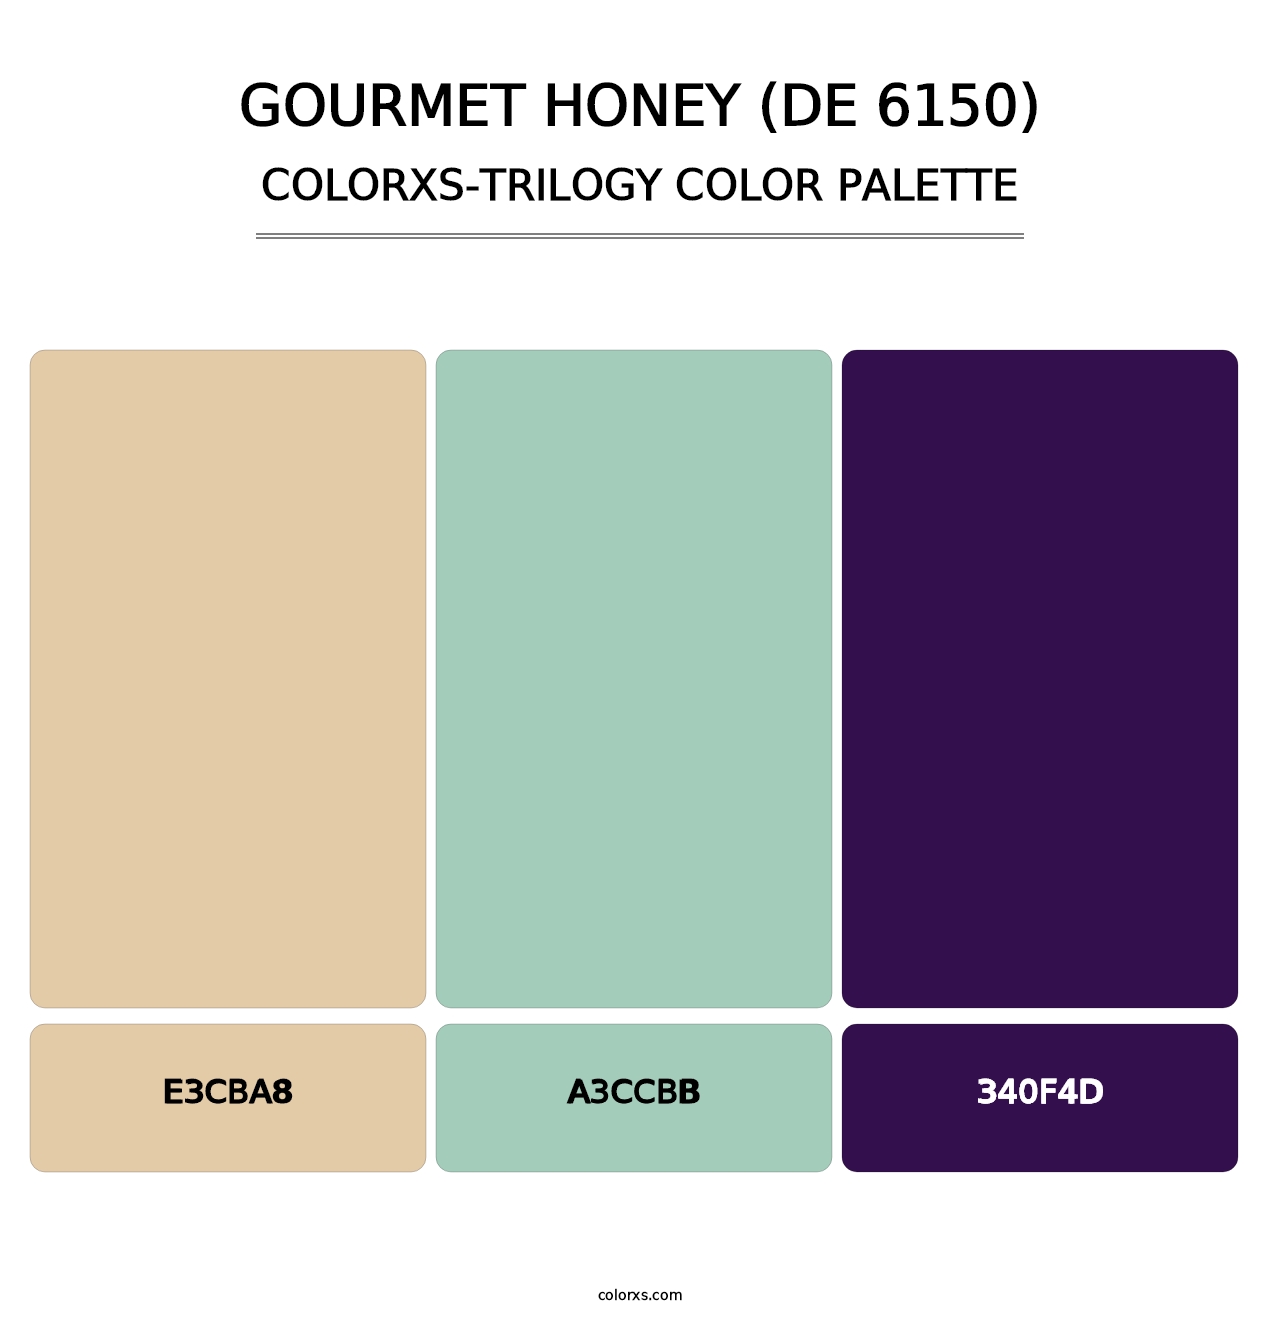 Gourmet Honey (DE 6150) - Colorxs Trilogy Palette